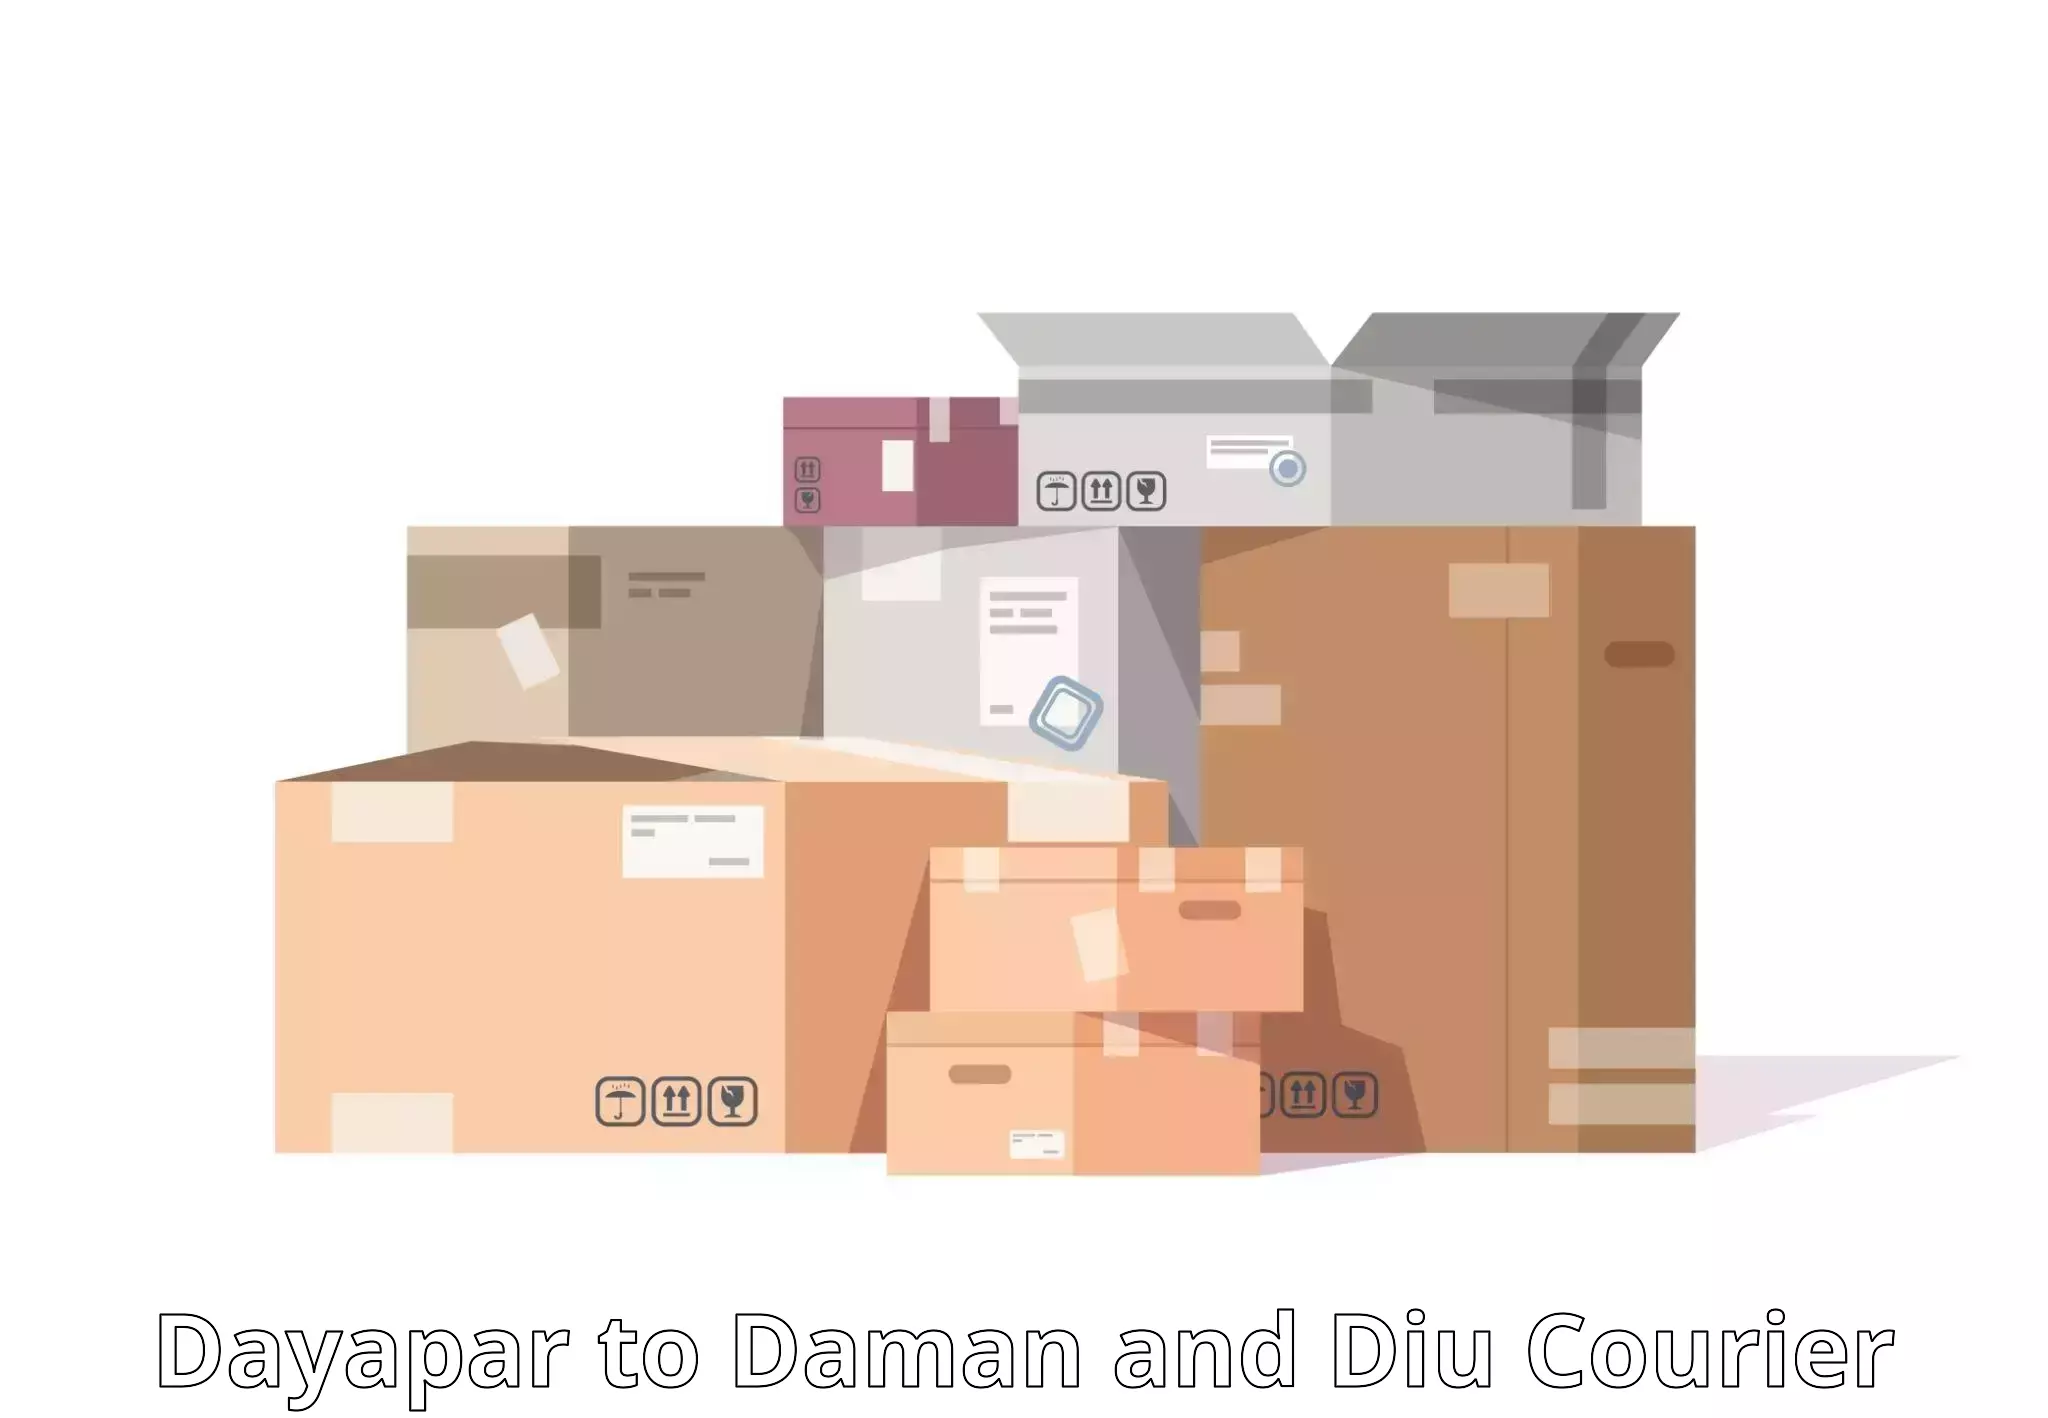 Global logistics network Dayapar to Daman and Diu